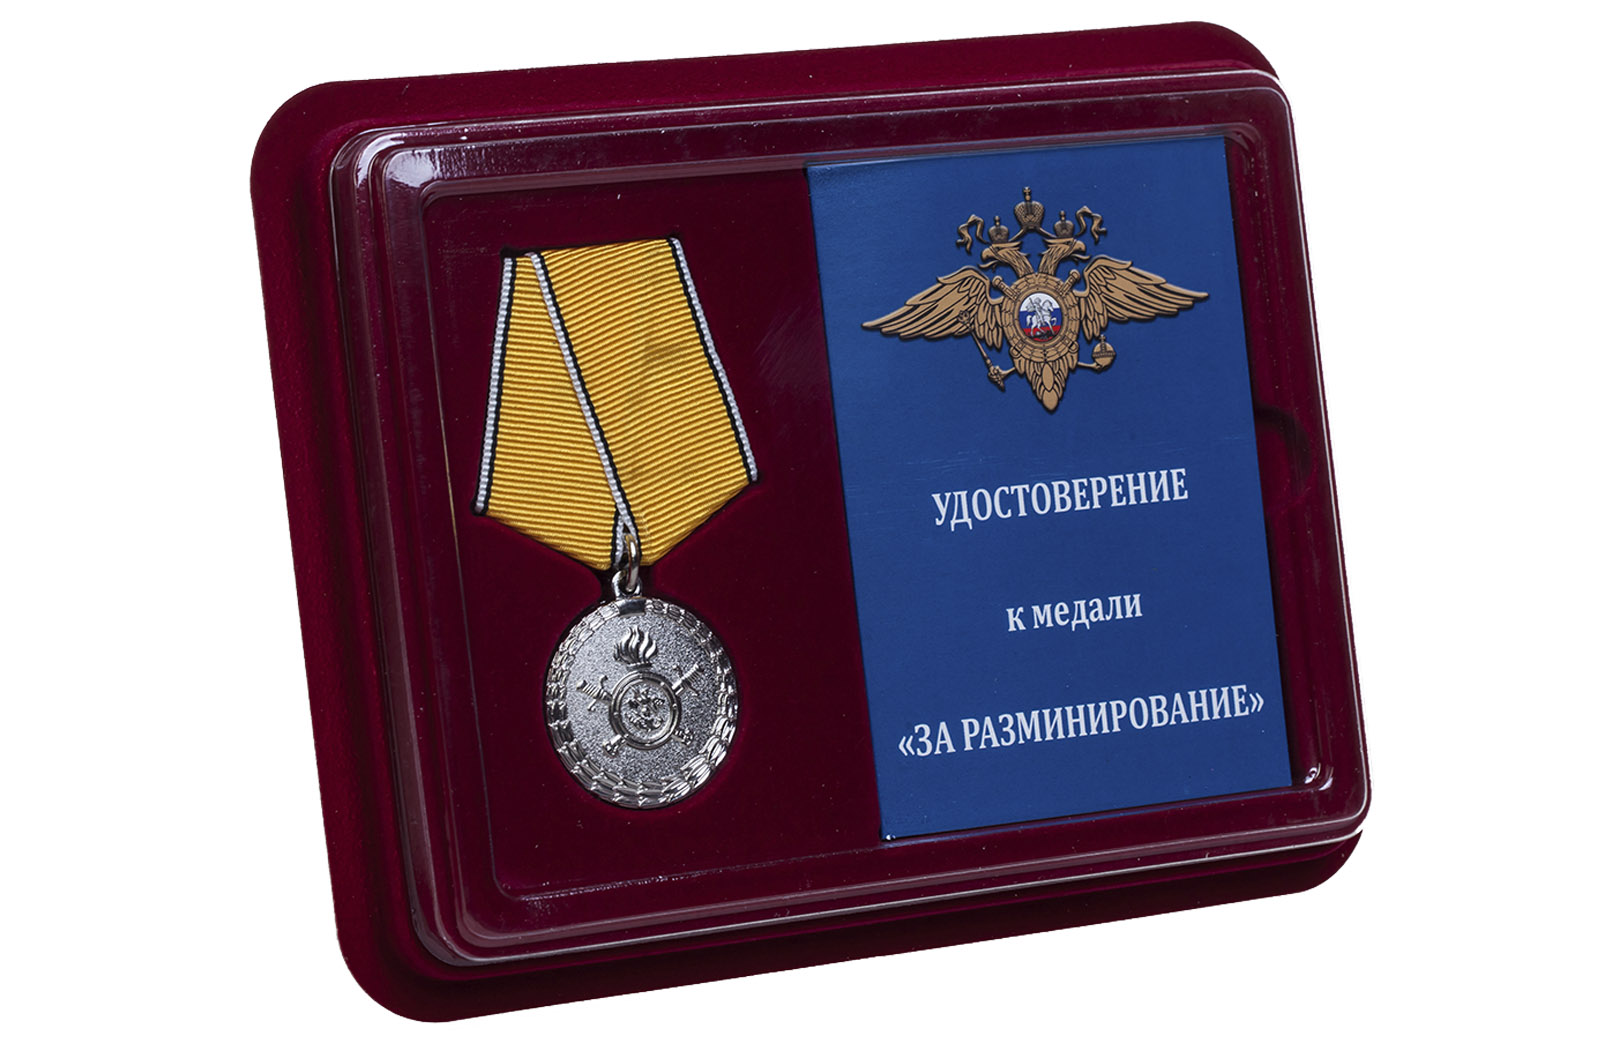 Купить медаль МВД России За разминирование оптом или в розницу